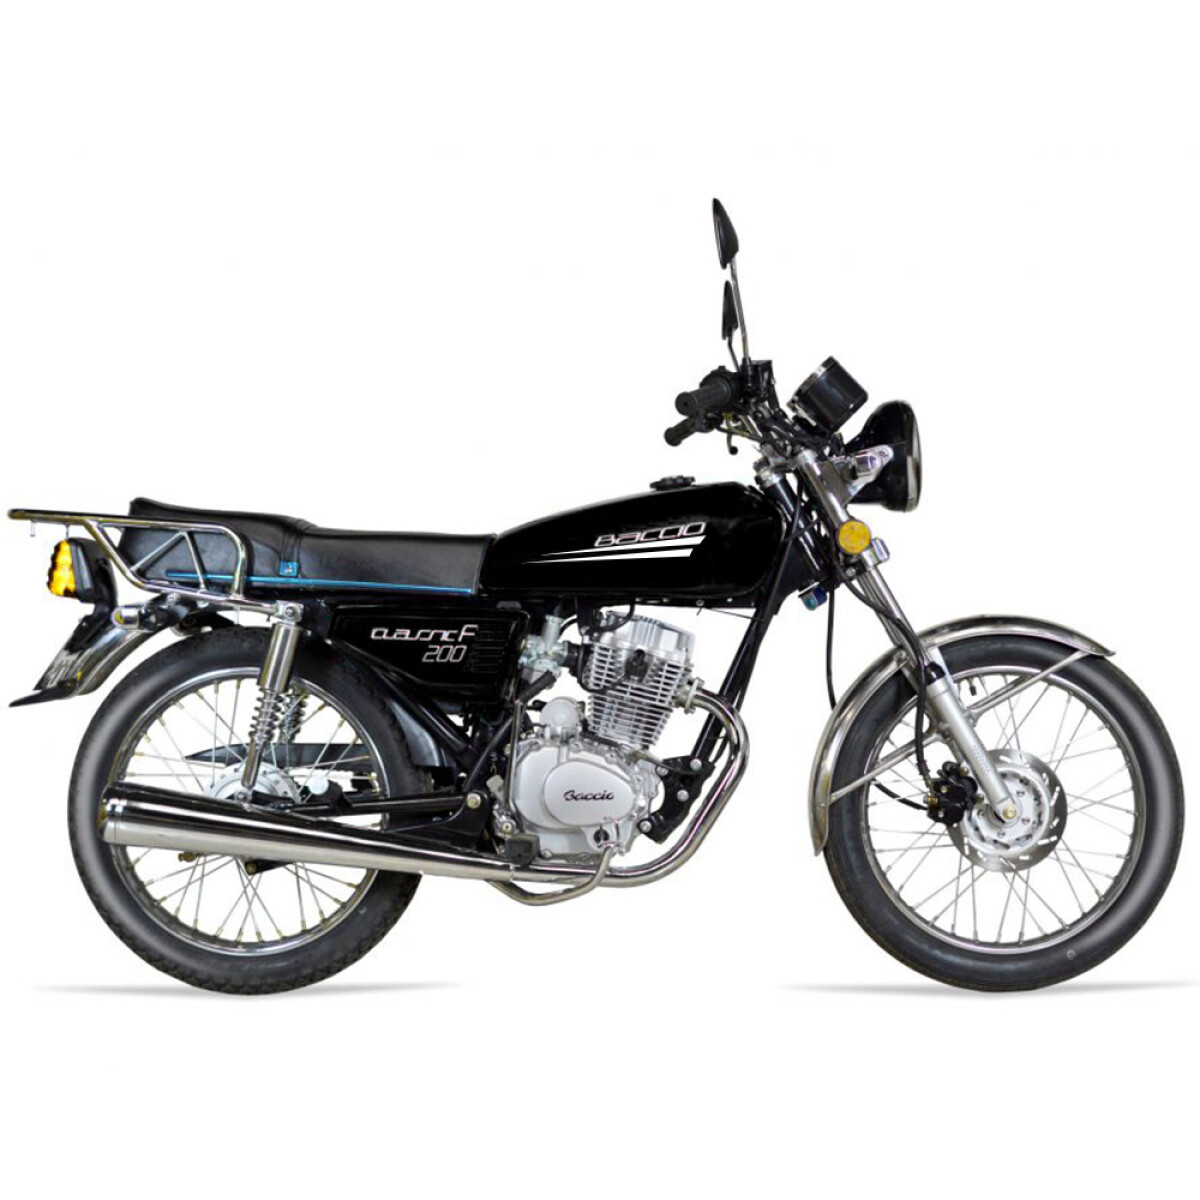 Moto Baccio Classic 200 - Negro 